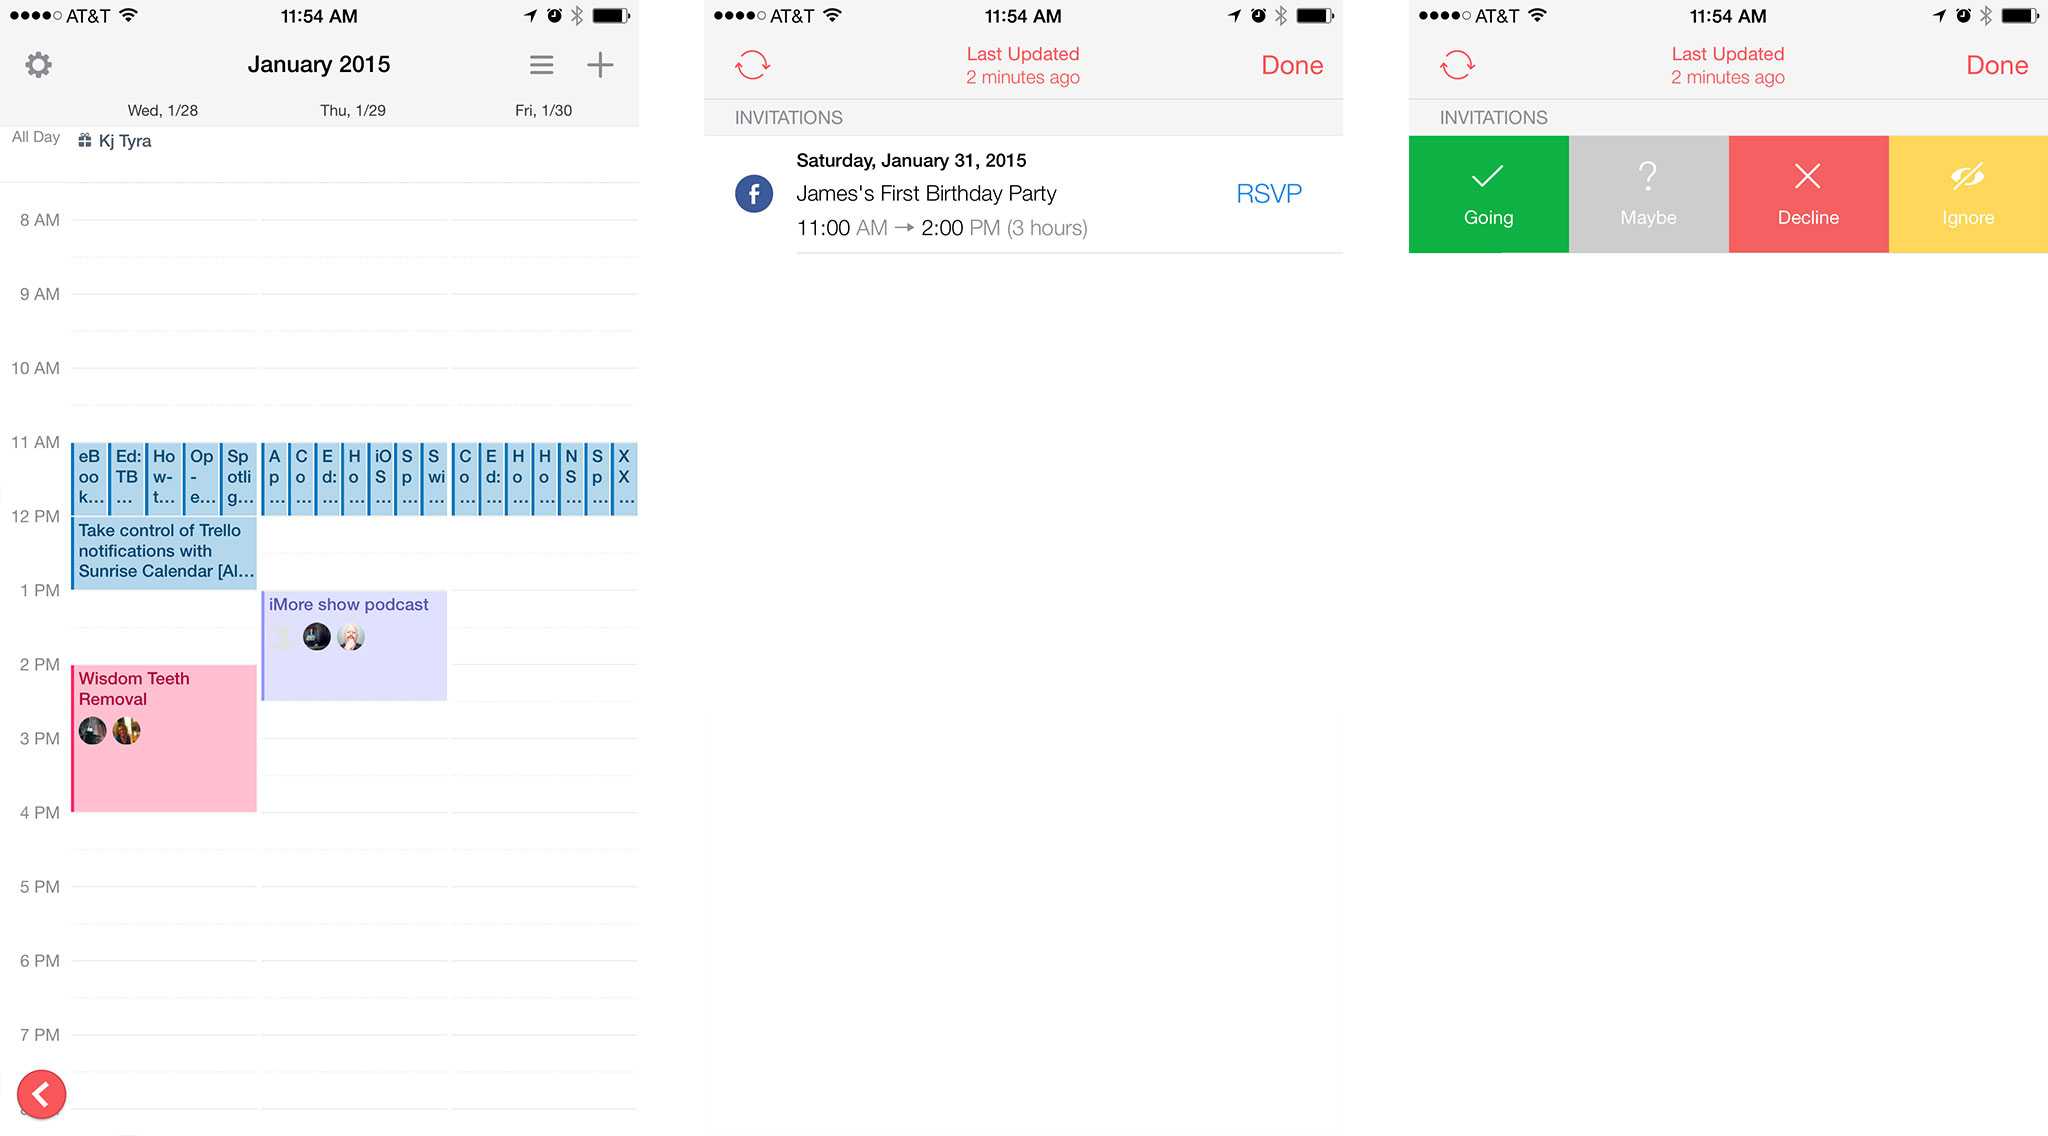 Sunrise Calendar: A calendar app for the ultra productive